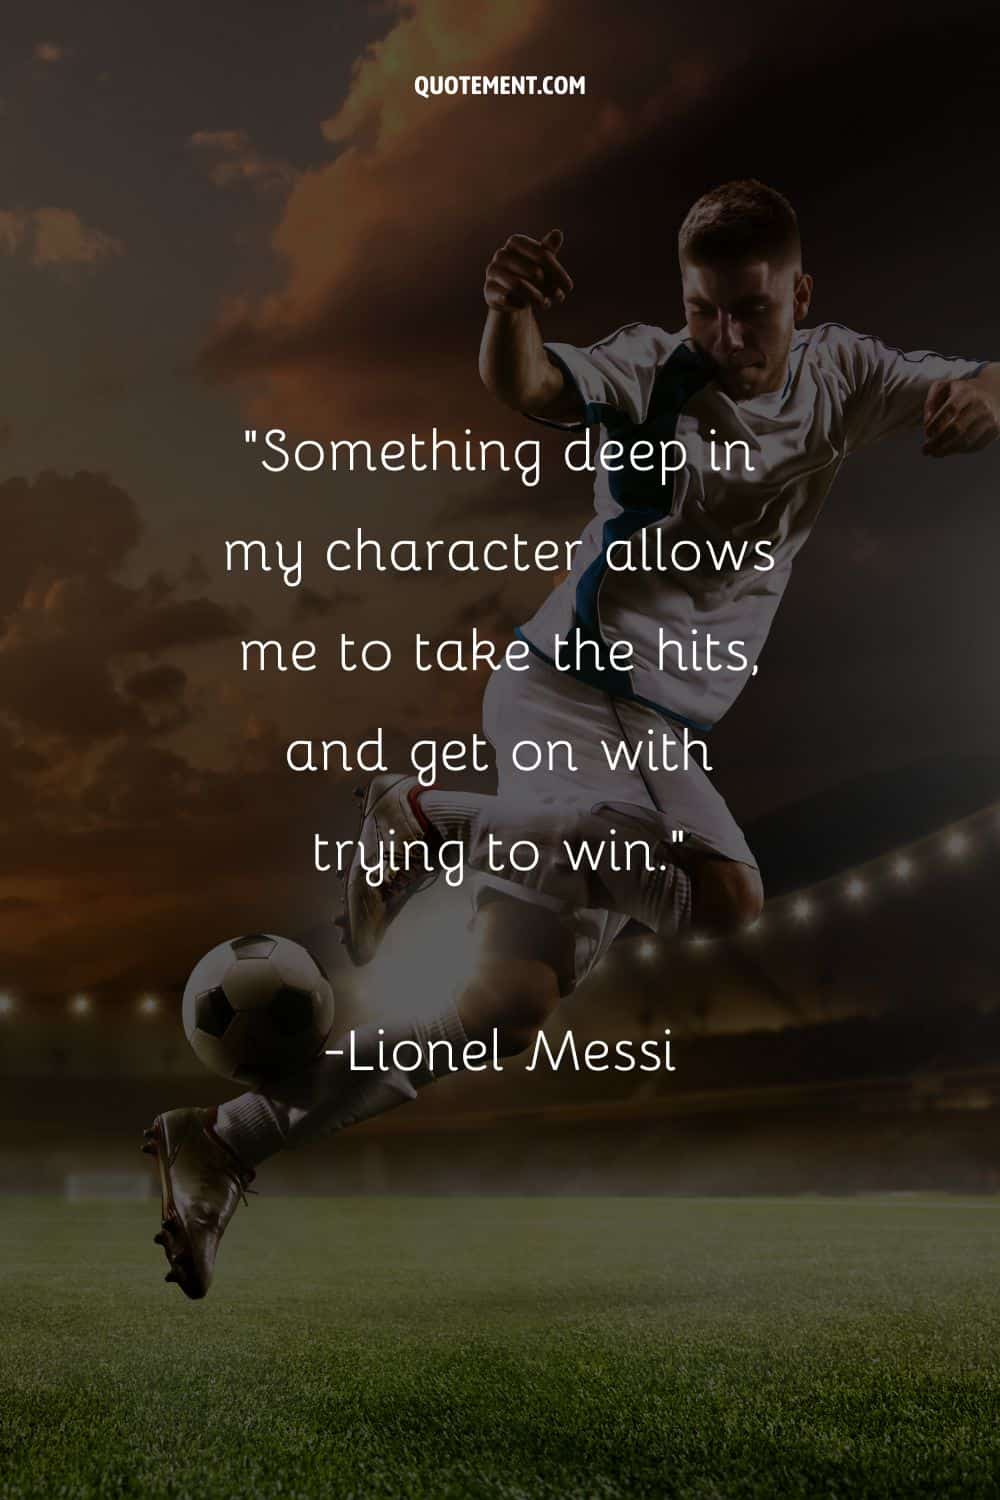 El jugador brilla mientras las luces se centran en el balón representando una famosa cita de un futbolista